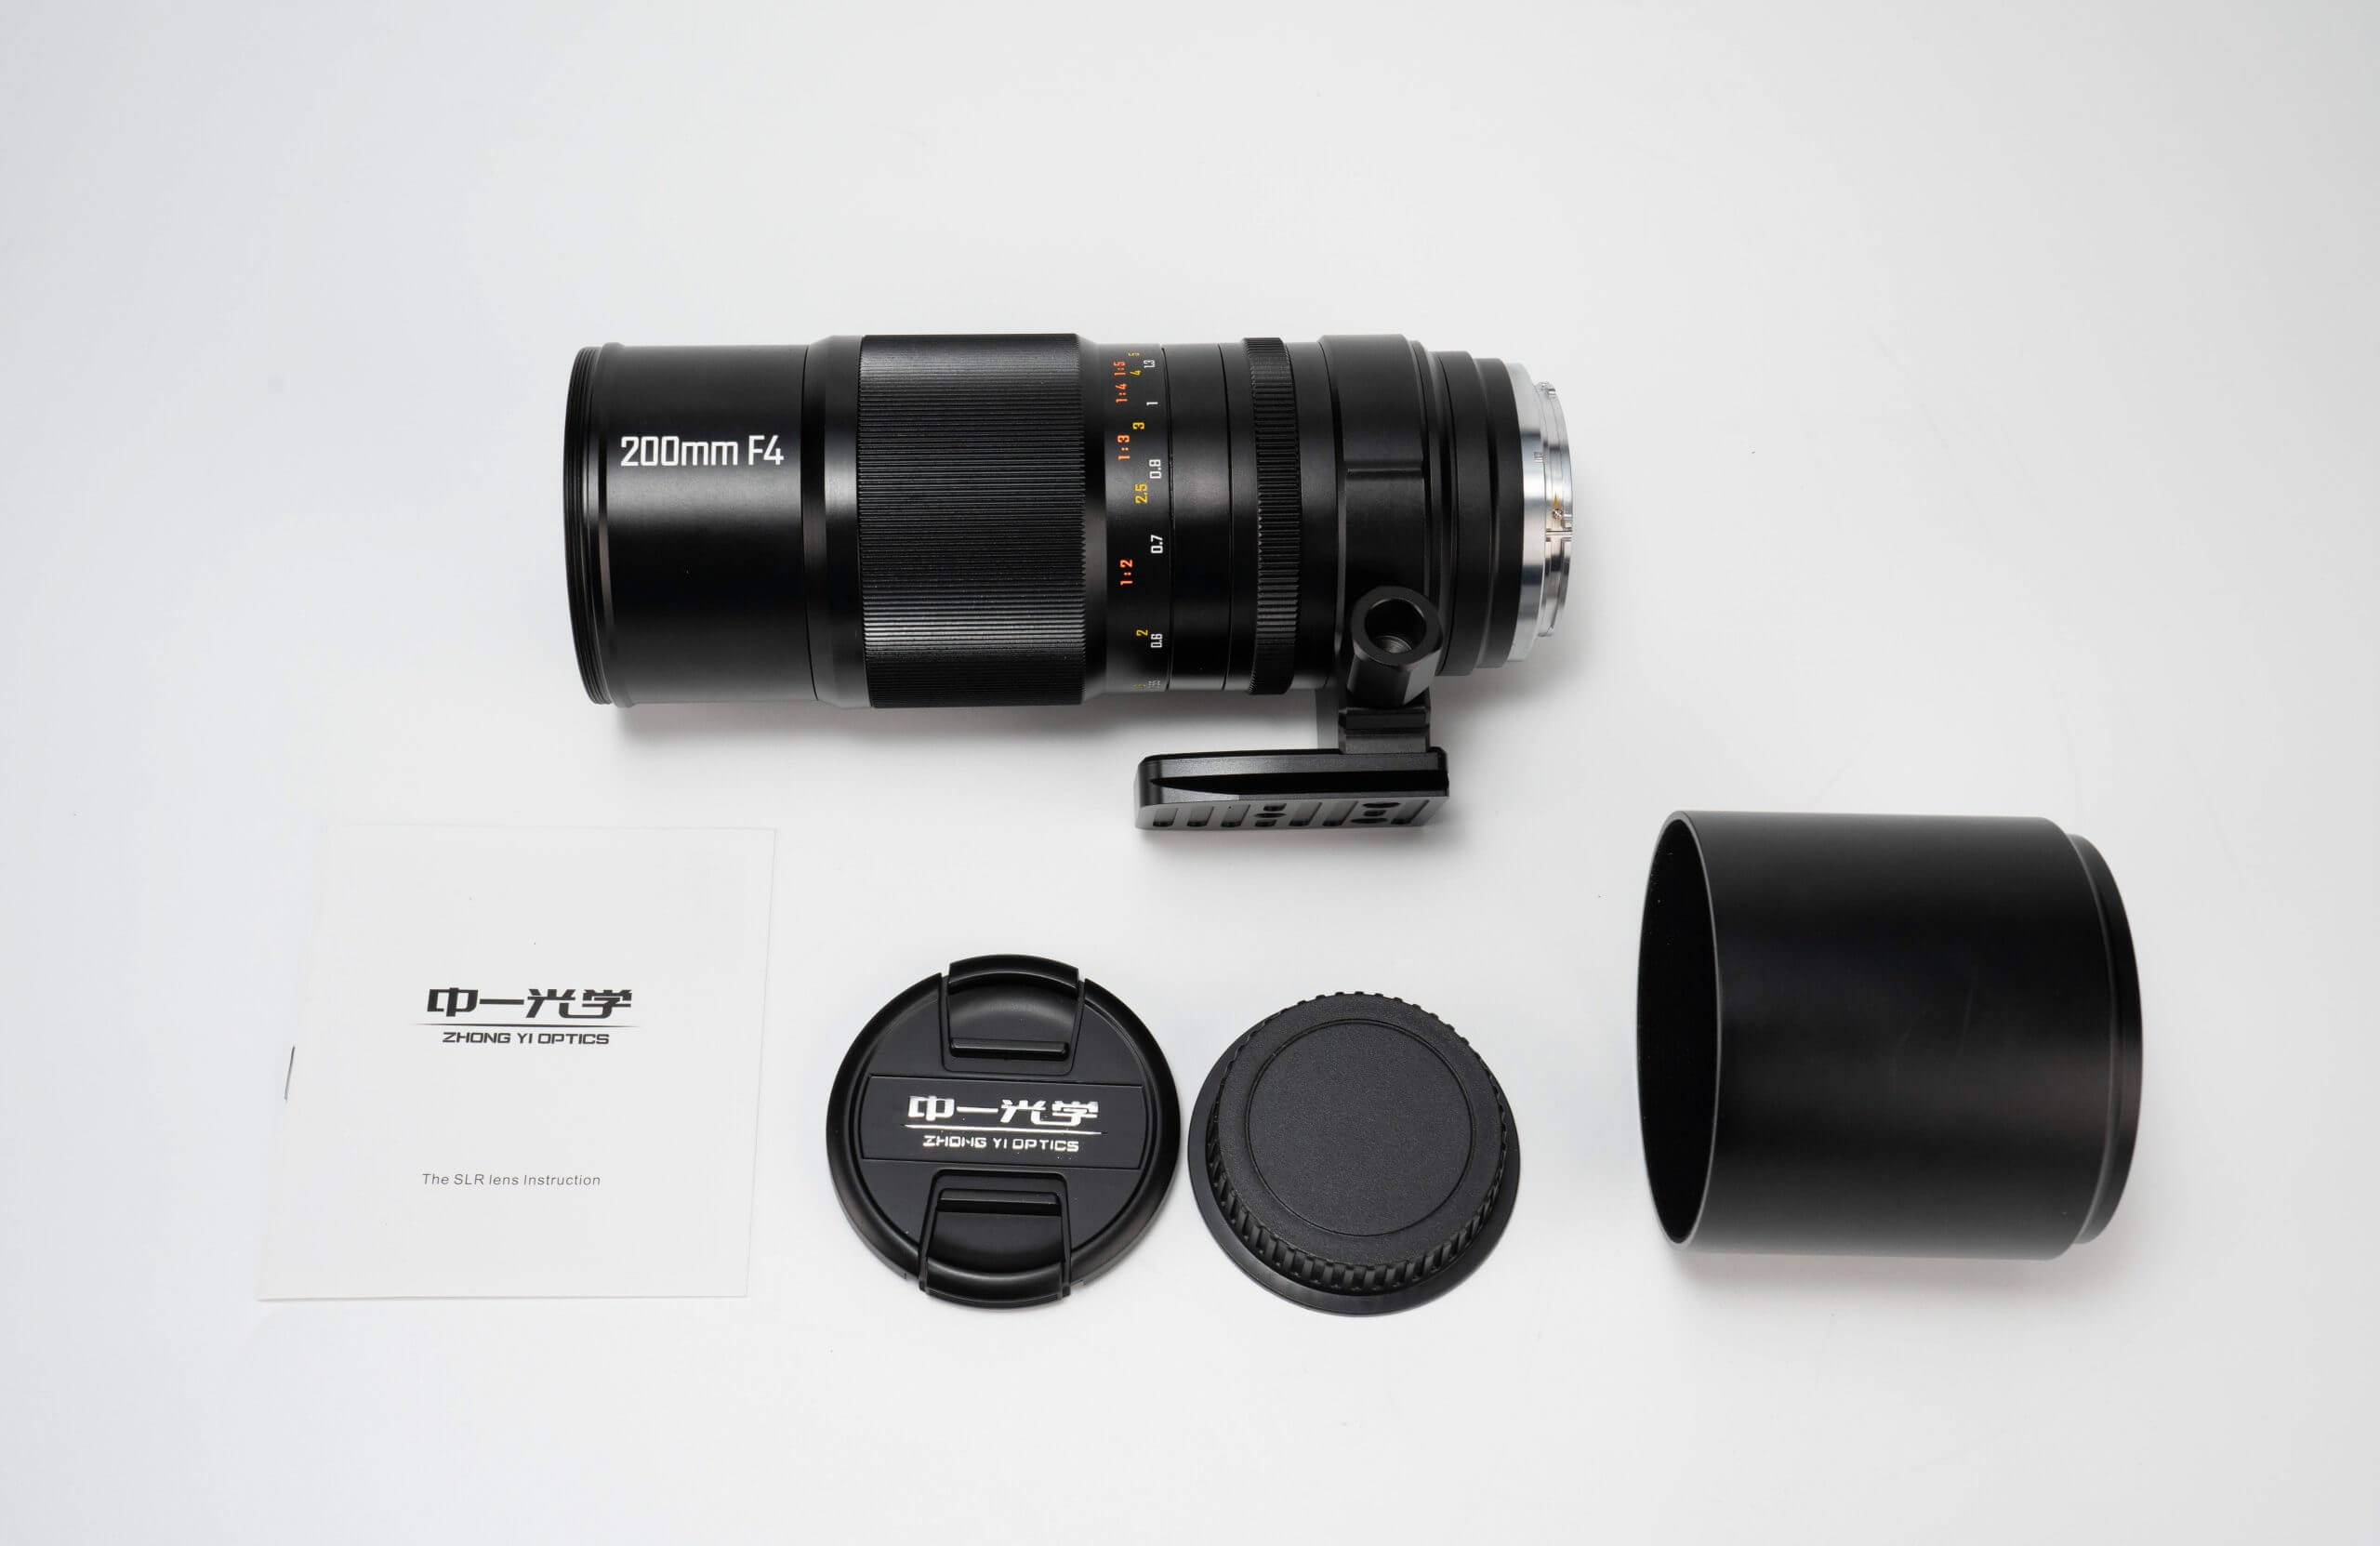 mitakon200f4apomacro 6 scaled - Zhong Yi Optics officially announces the Mitakon 200mm F/4 APO Macro Lens